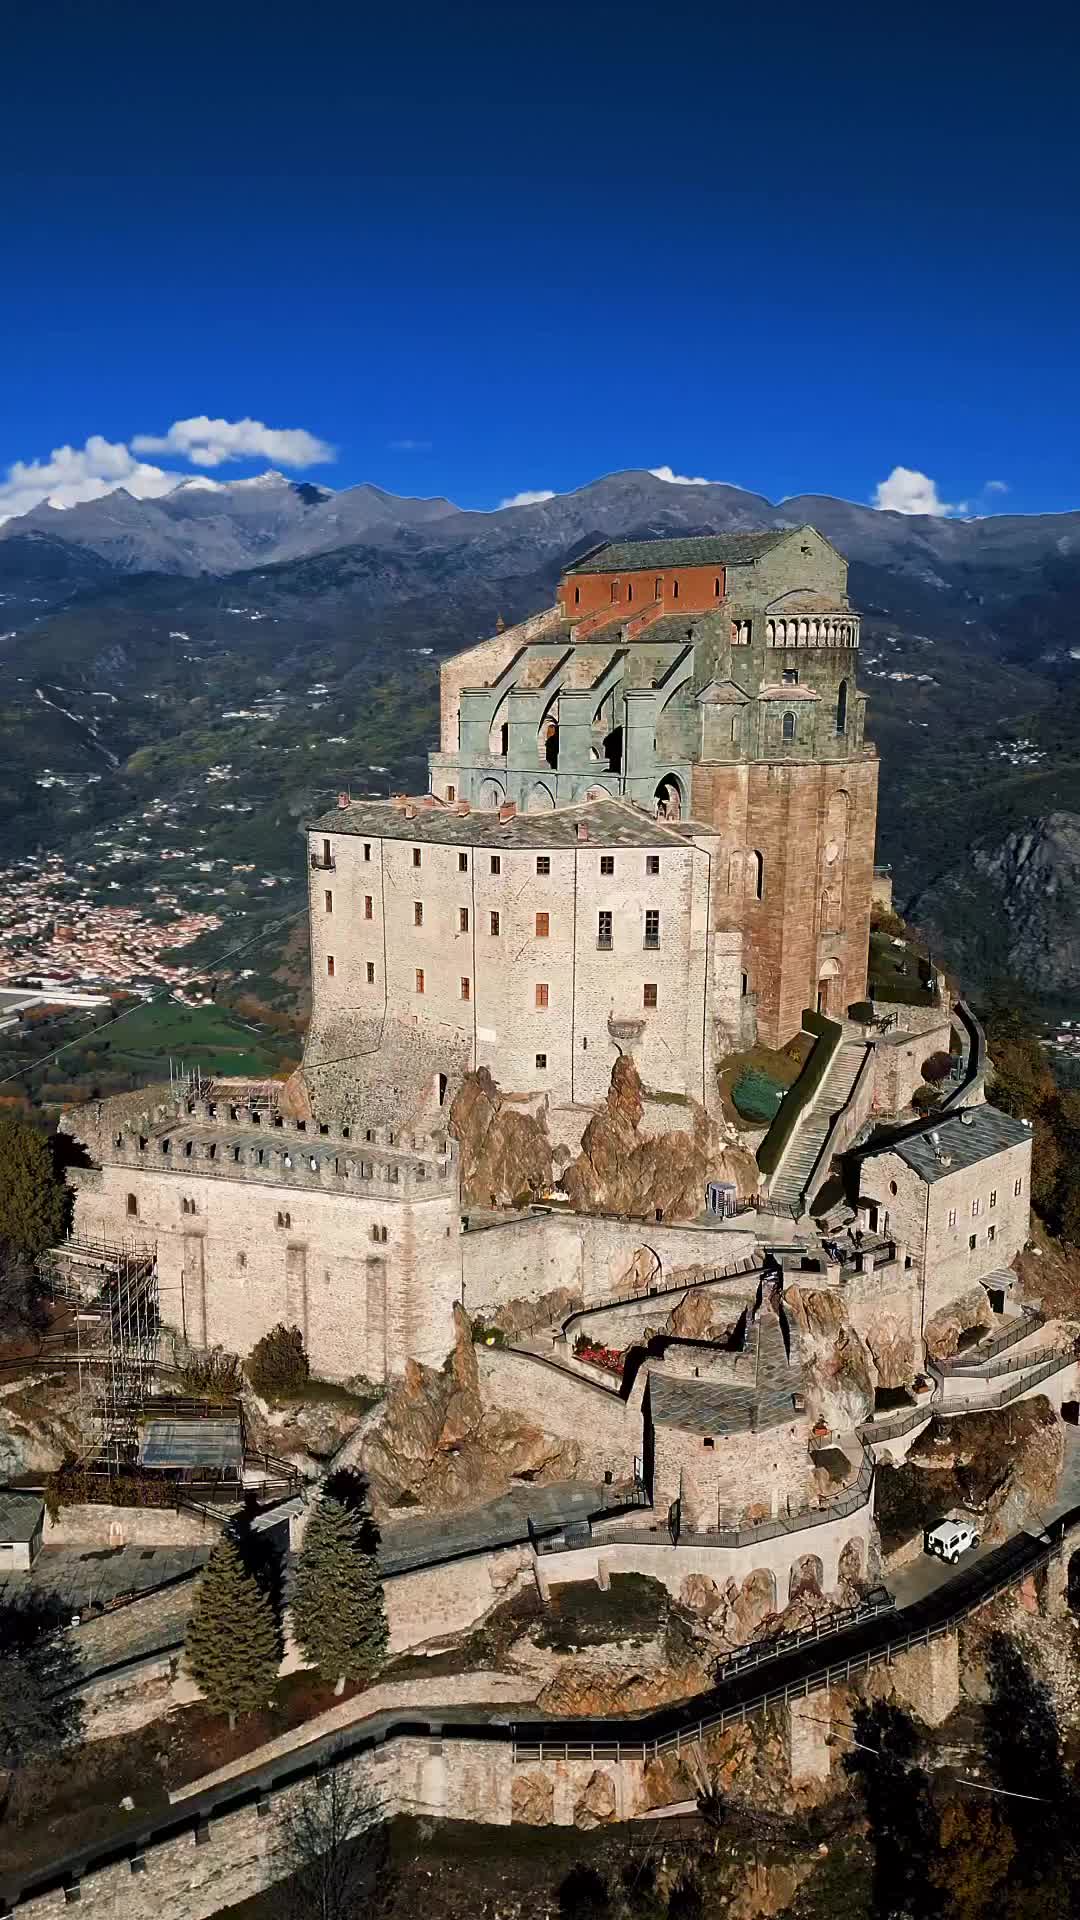 Discover Sacra di San Michele in Piemonte, Italy